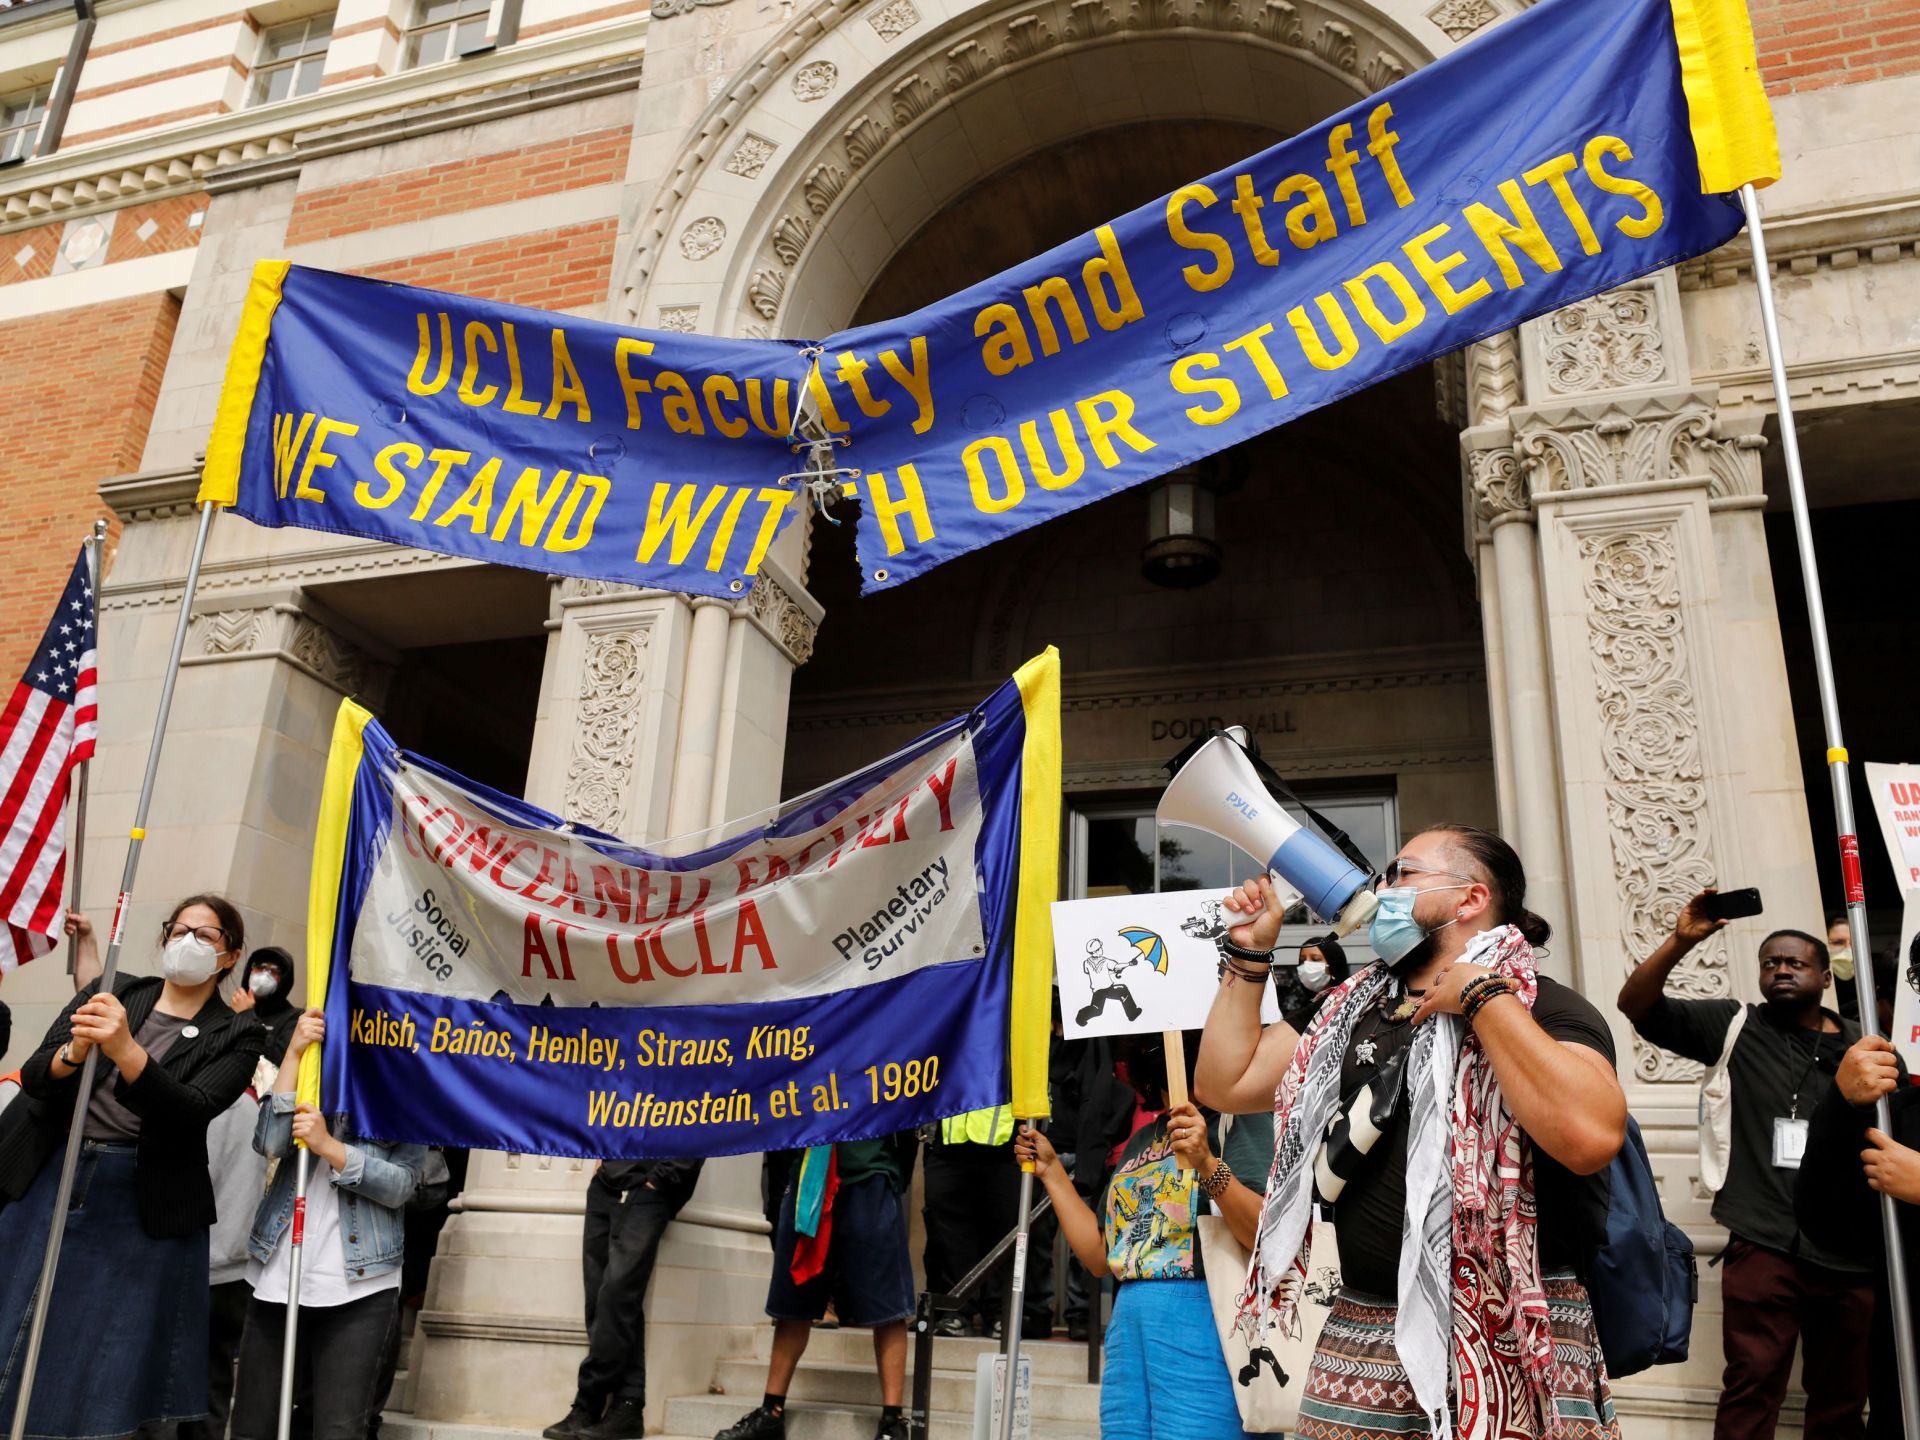 أكاديميون بجامعة كاليفورنيا ينهون إضرابا داعما لغزة بعد أمر محكمة | أخبار – البوكس نيوز